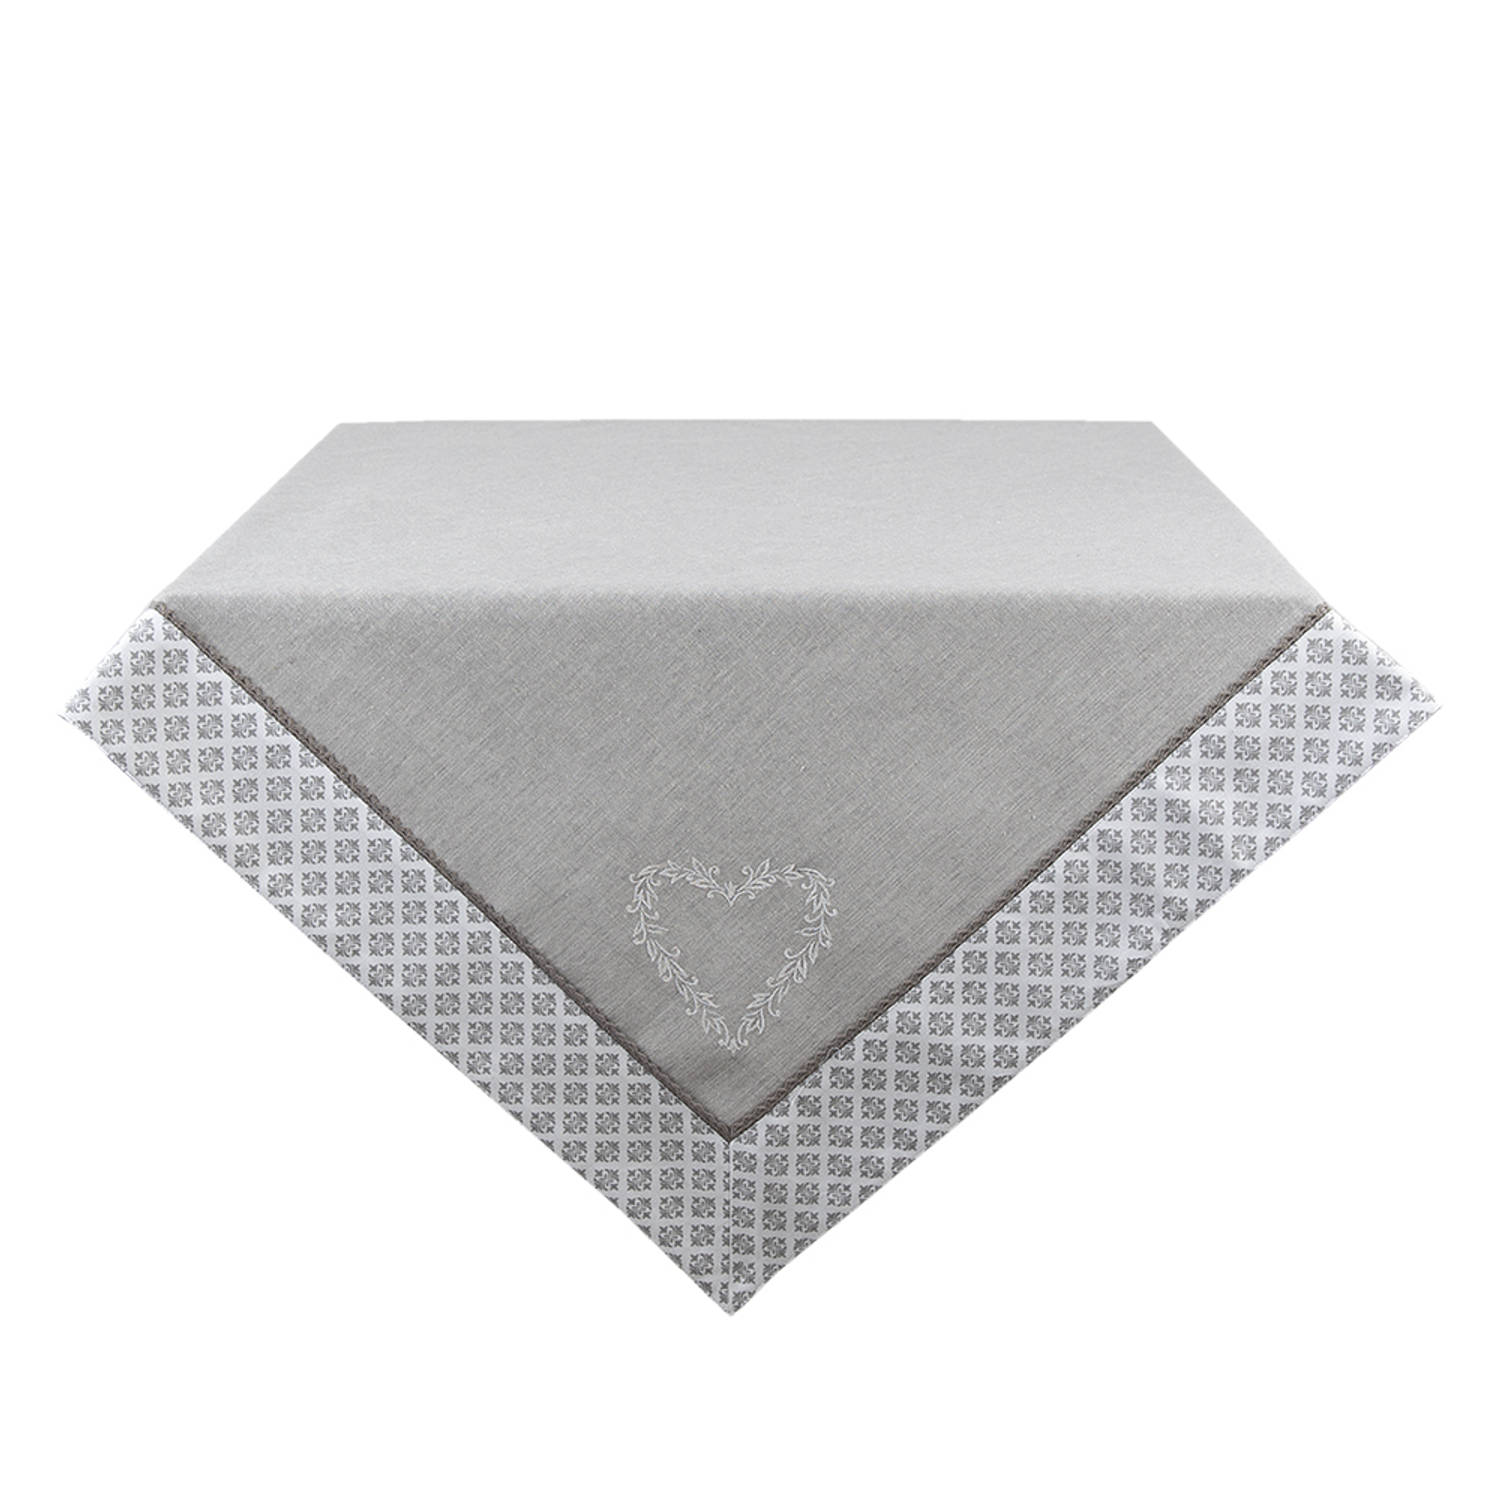 HAES DECO - Vierkant Tafellaken - formaat 100x100 cm - kleuren Grijs / Wit - van 100% Katoen - Collectie: Lovely Heart - Tafellaken, Tafellinnen, Tafeltextiel